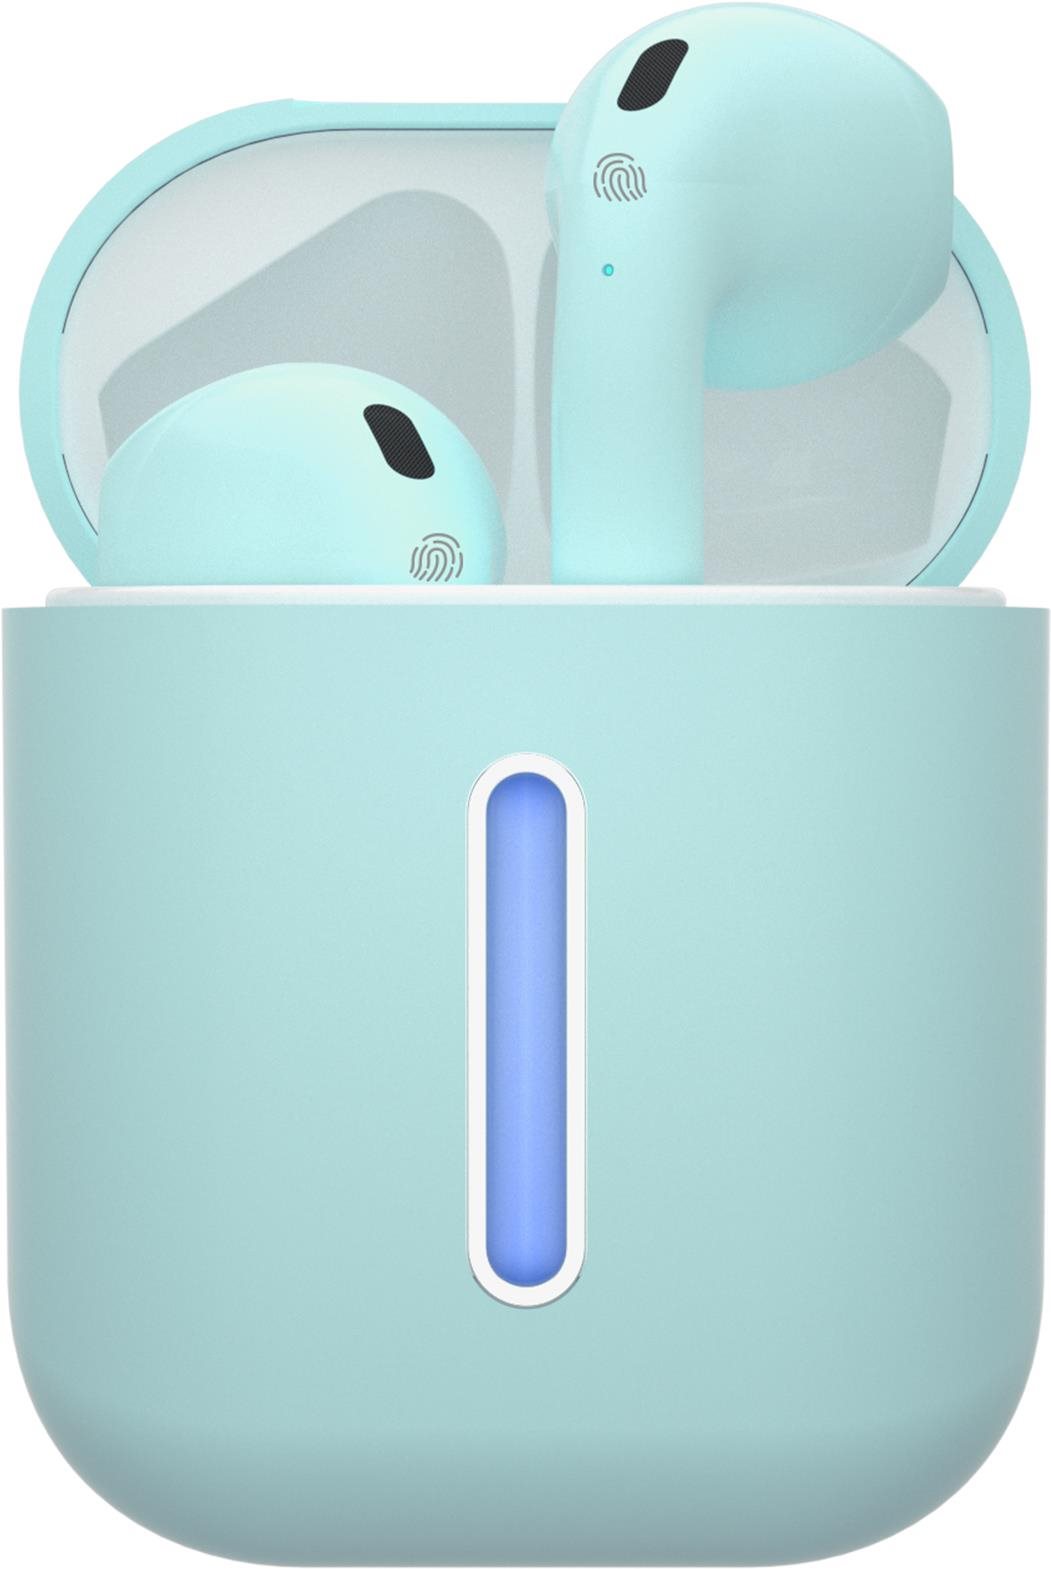 Vezeték nélküli fül-/fejhallgató TESLA SOUND EB10 Vezeték nélküli Bluetooth fülhallgató - Ice Blue